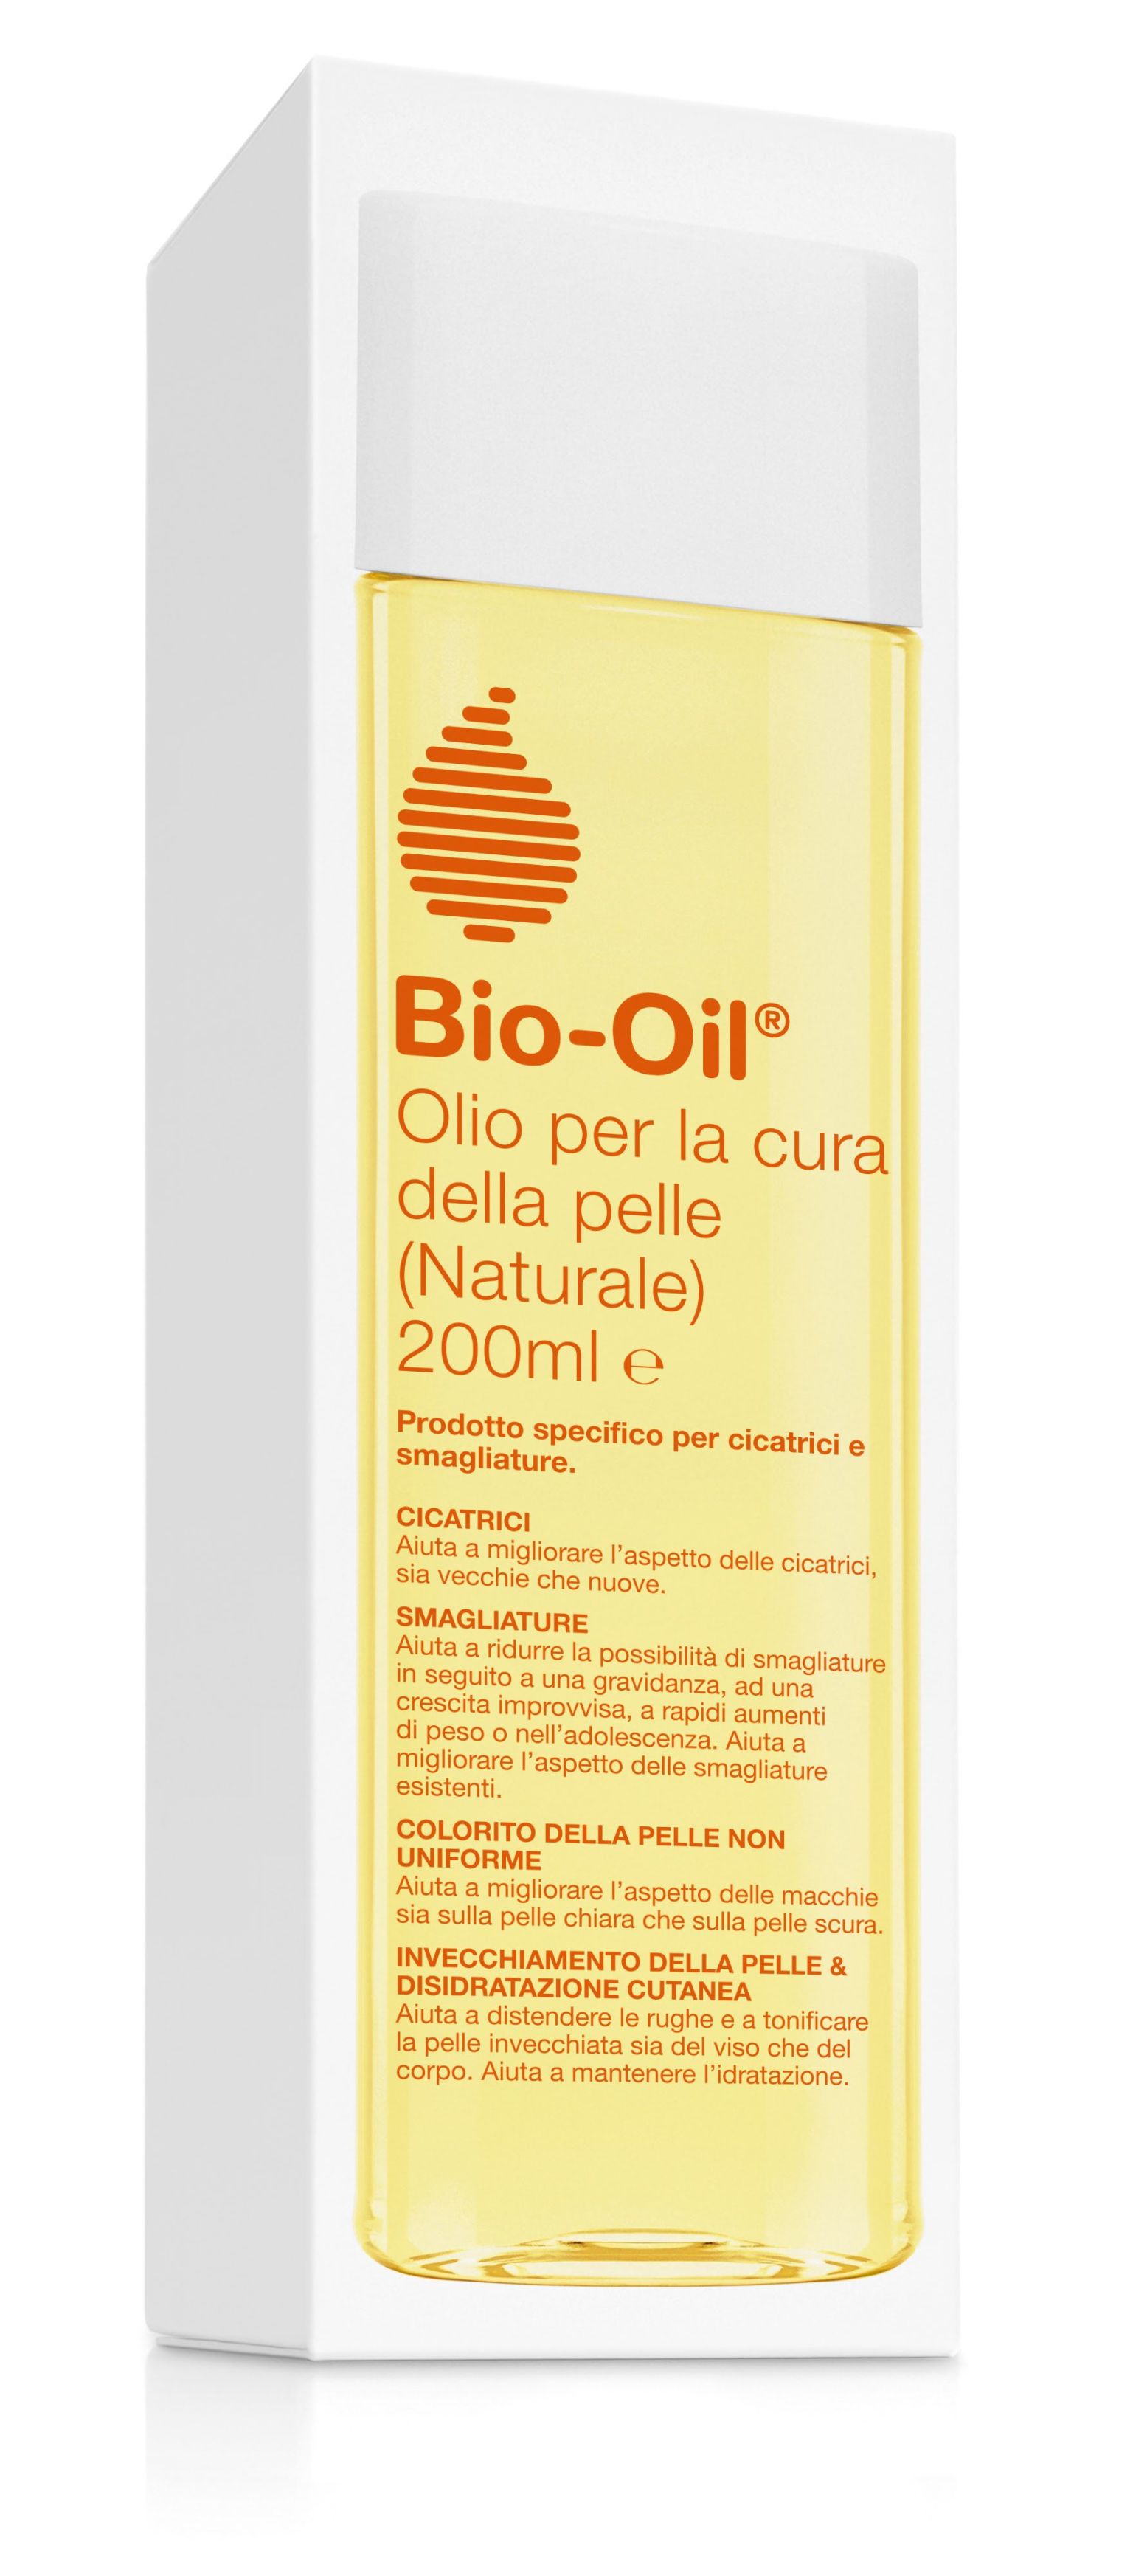 982184816 - Bio-Oil Olio Naturale per la cura della pelle 200ml - 4709001_4.jpg